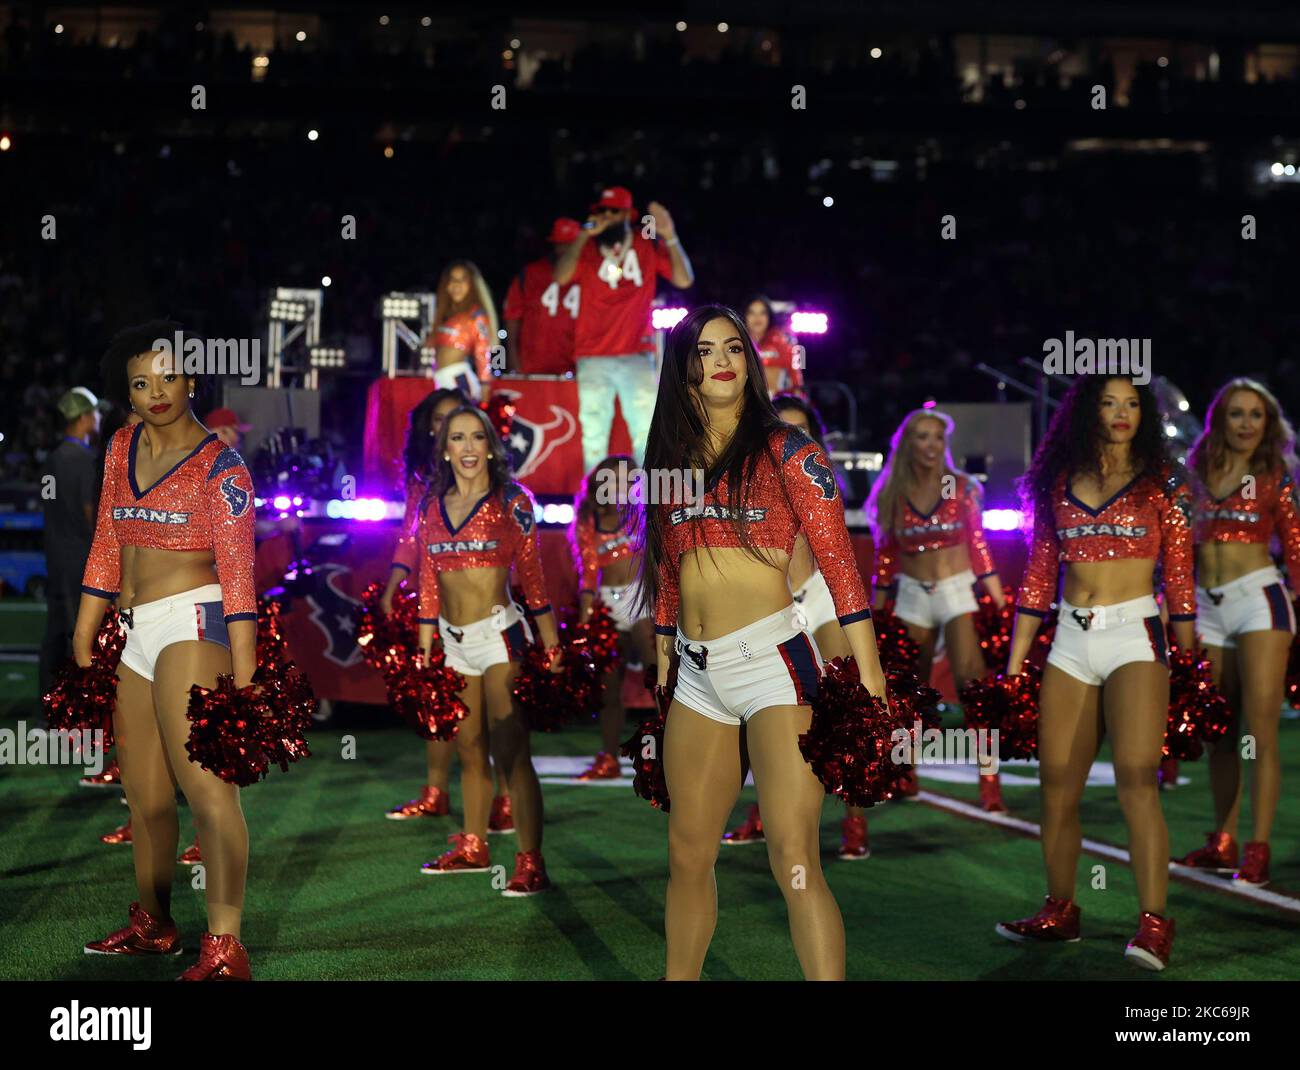 3 novembre 2022: I cheerleaders texani di Houston ballano durante una performance di halftime del rapper Big Slim in un gioco di NFL tra i texani e le aquile il 3 novembre 2022, a Houston. Le aquile vincono 29-17. (Credit Image: © Scott Coleman/ZUMA Press Wire) Foto Stock